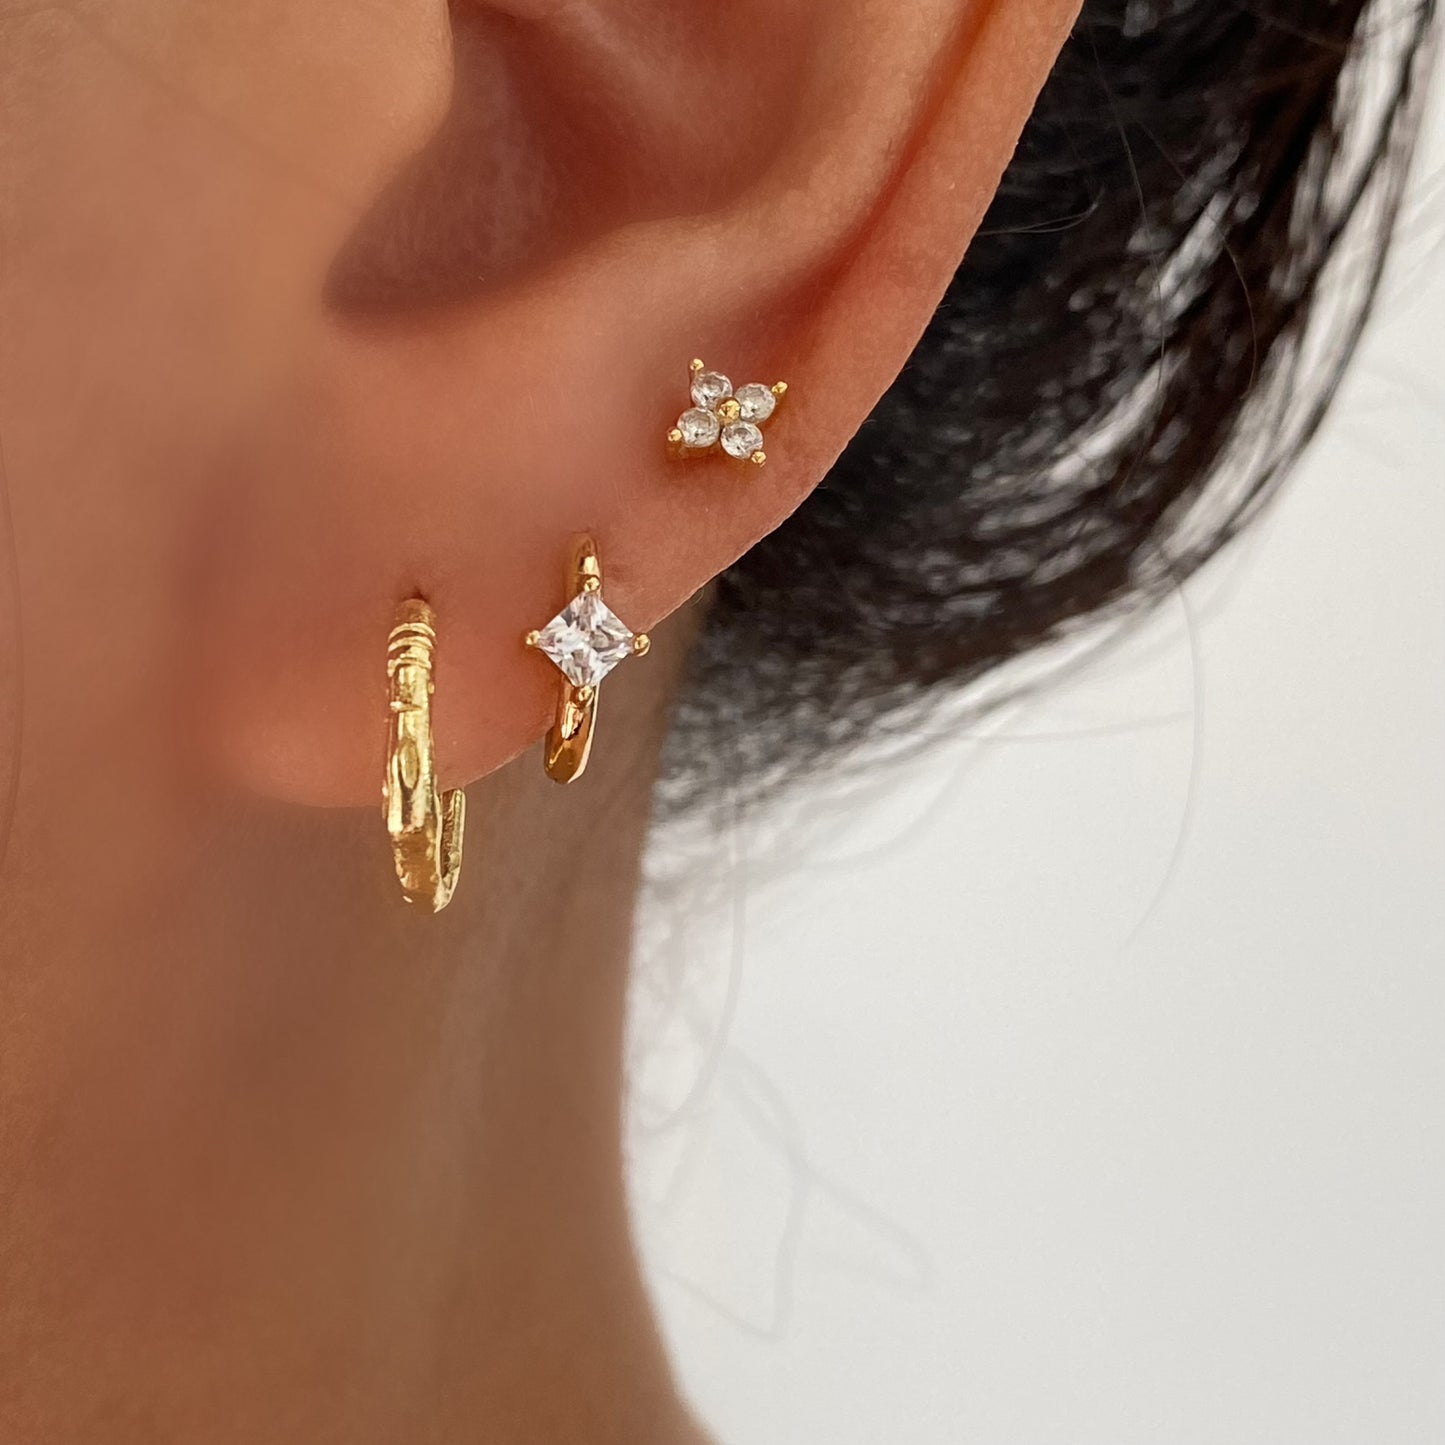 Textured Gold Hoop Earrings, 925 Sterling Silver